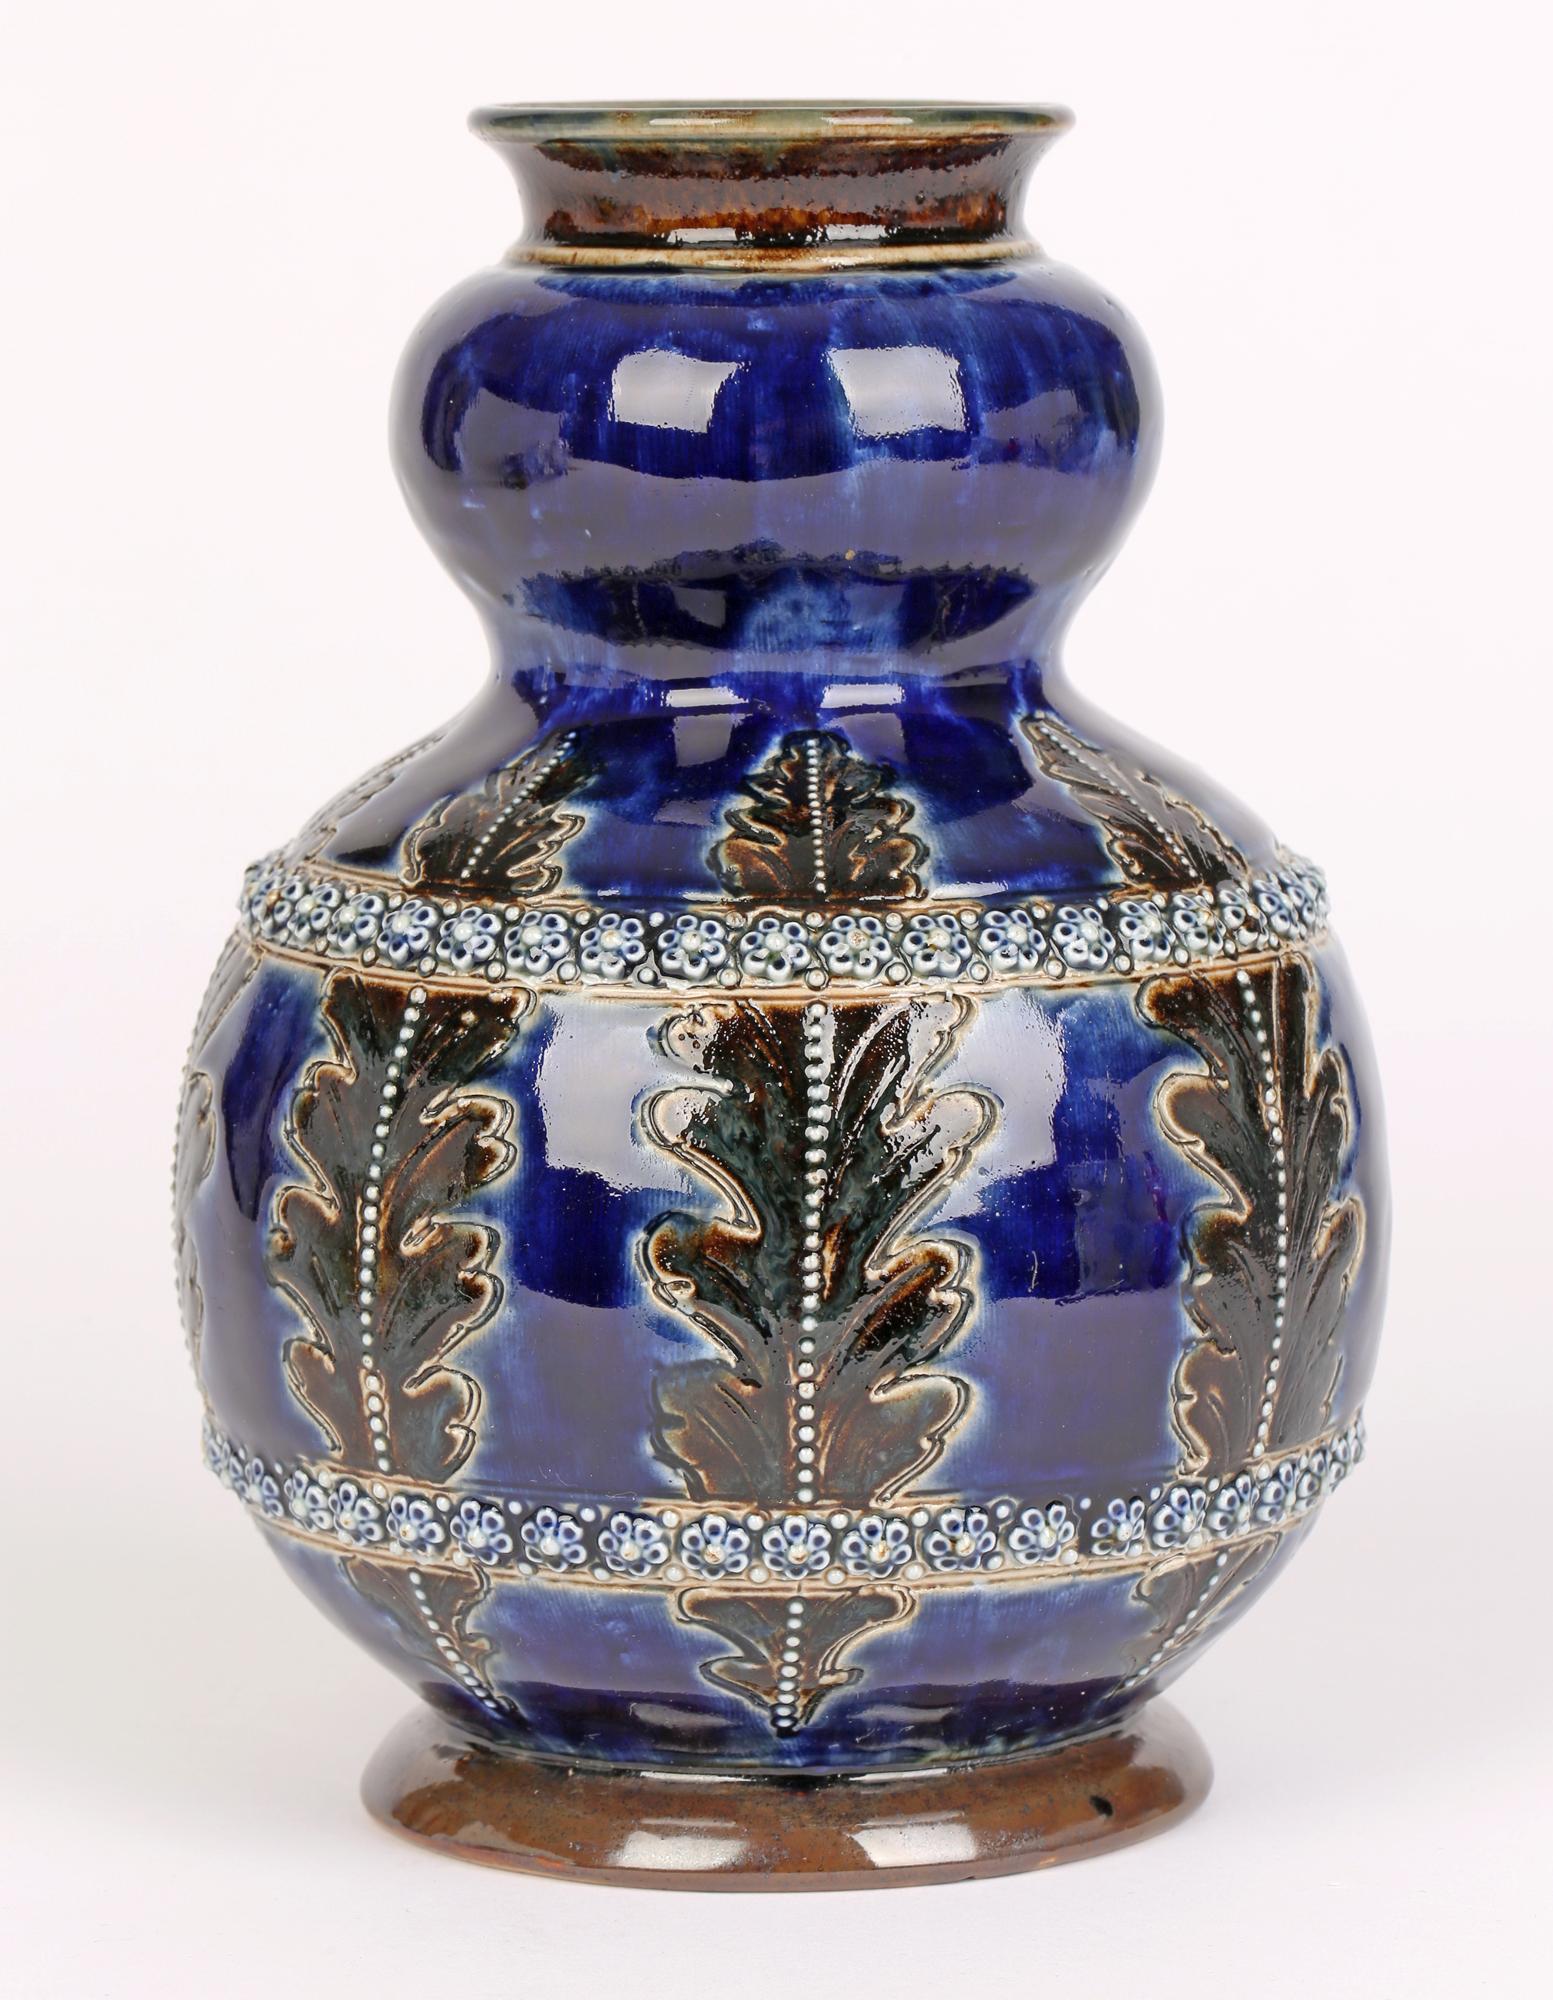 George Tinworth for Doulton Lambeth Leaf & Floral Design Art Pottery Vase 1877   8